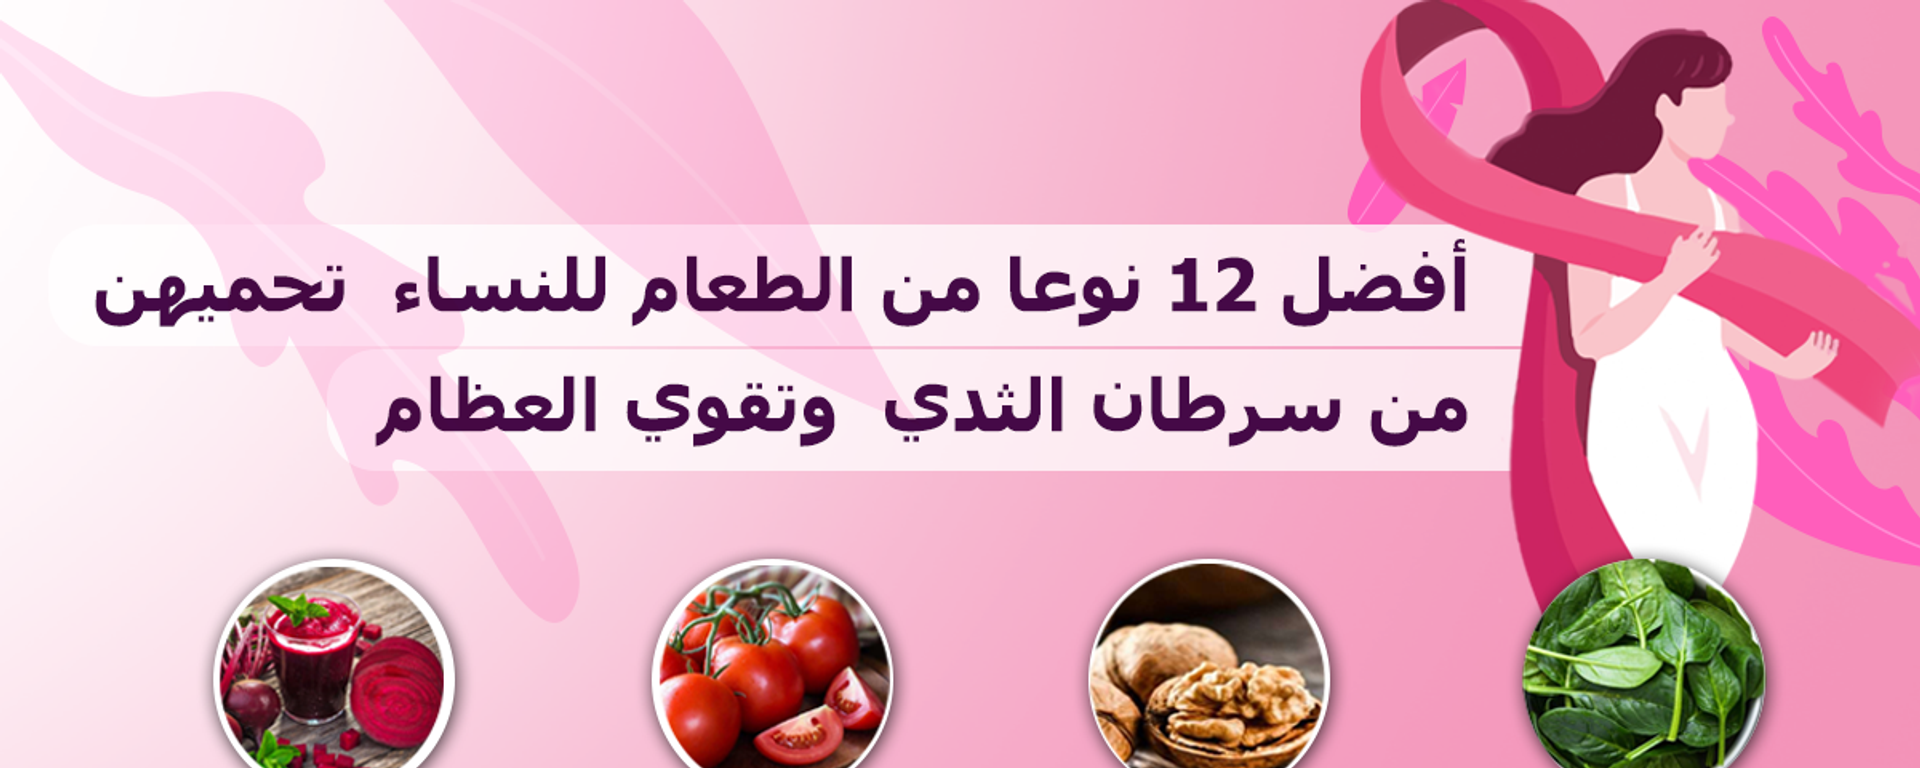 أفضل 12 نوعا من الطعام للنساء... يحميهن من سرطان الثدي ويقوي العظام - سبوتنيك عربي, 1920, 30.03.2021